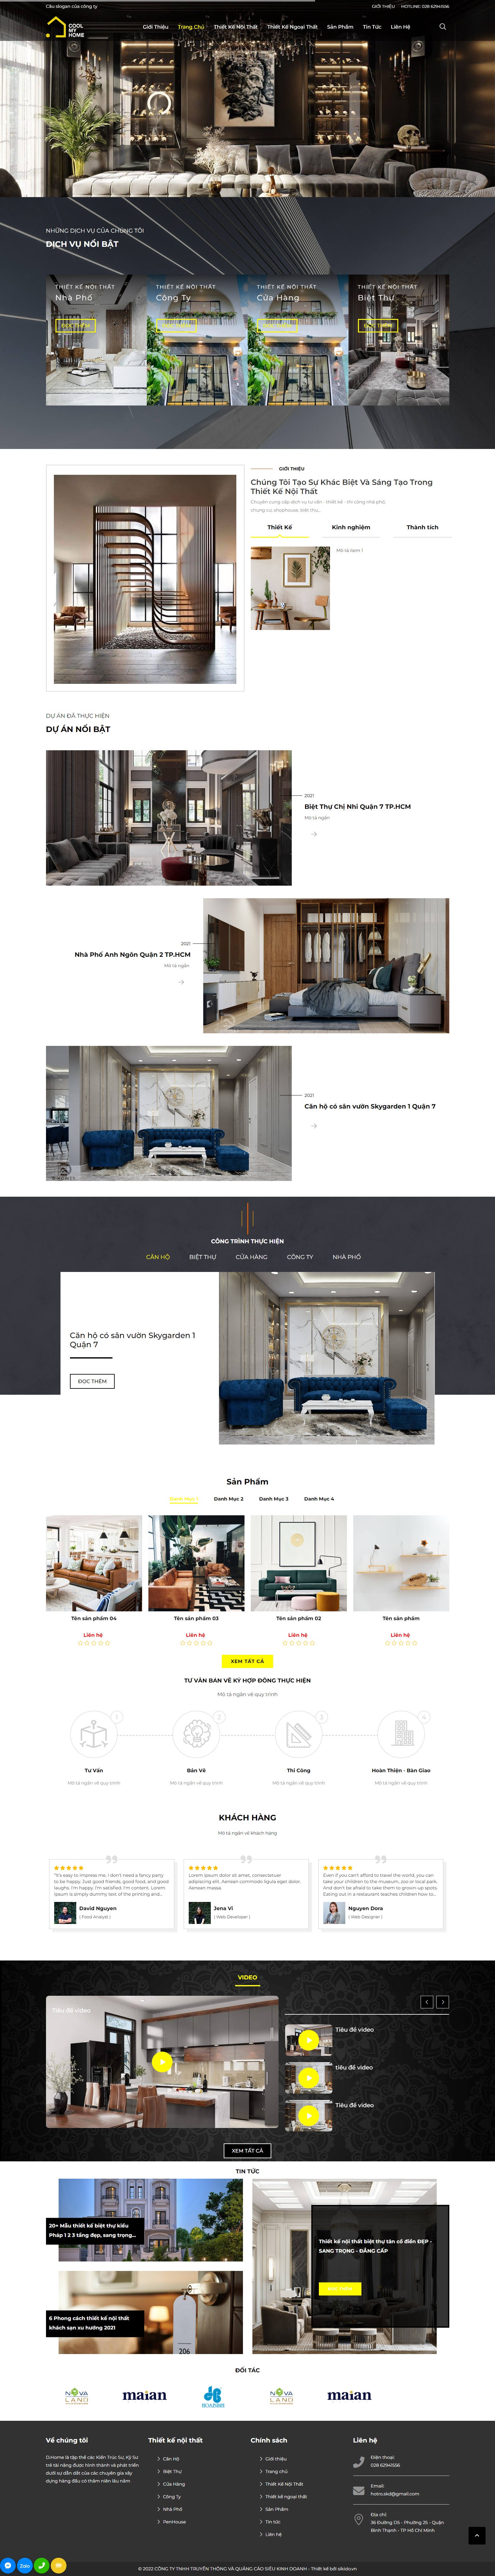 Thiết kế website theo yêu cầu khách hàng chuyên nghiệp tại WEB40.vn